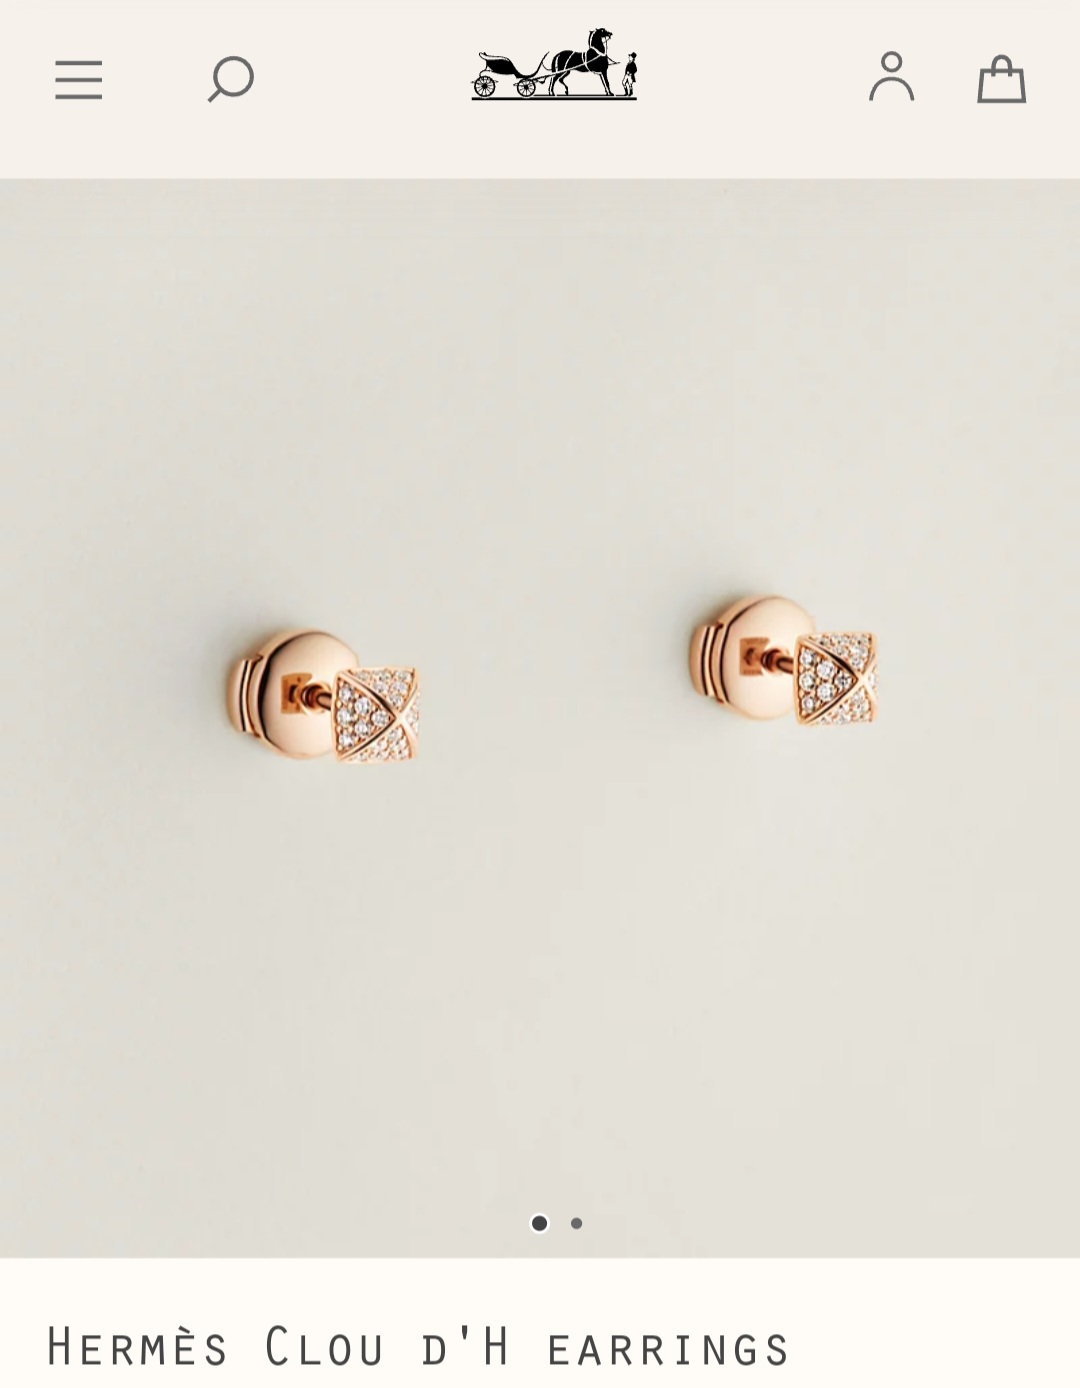 Hermès Clou d’H earrings